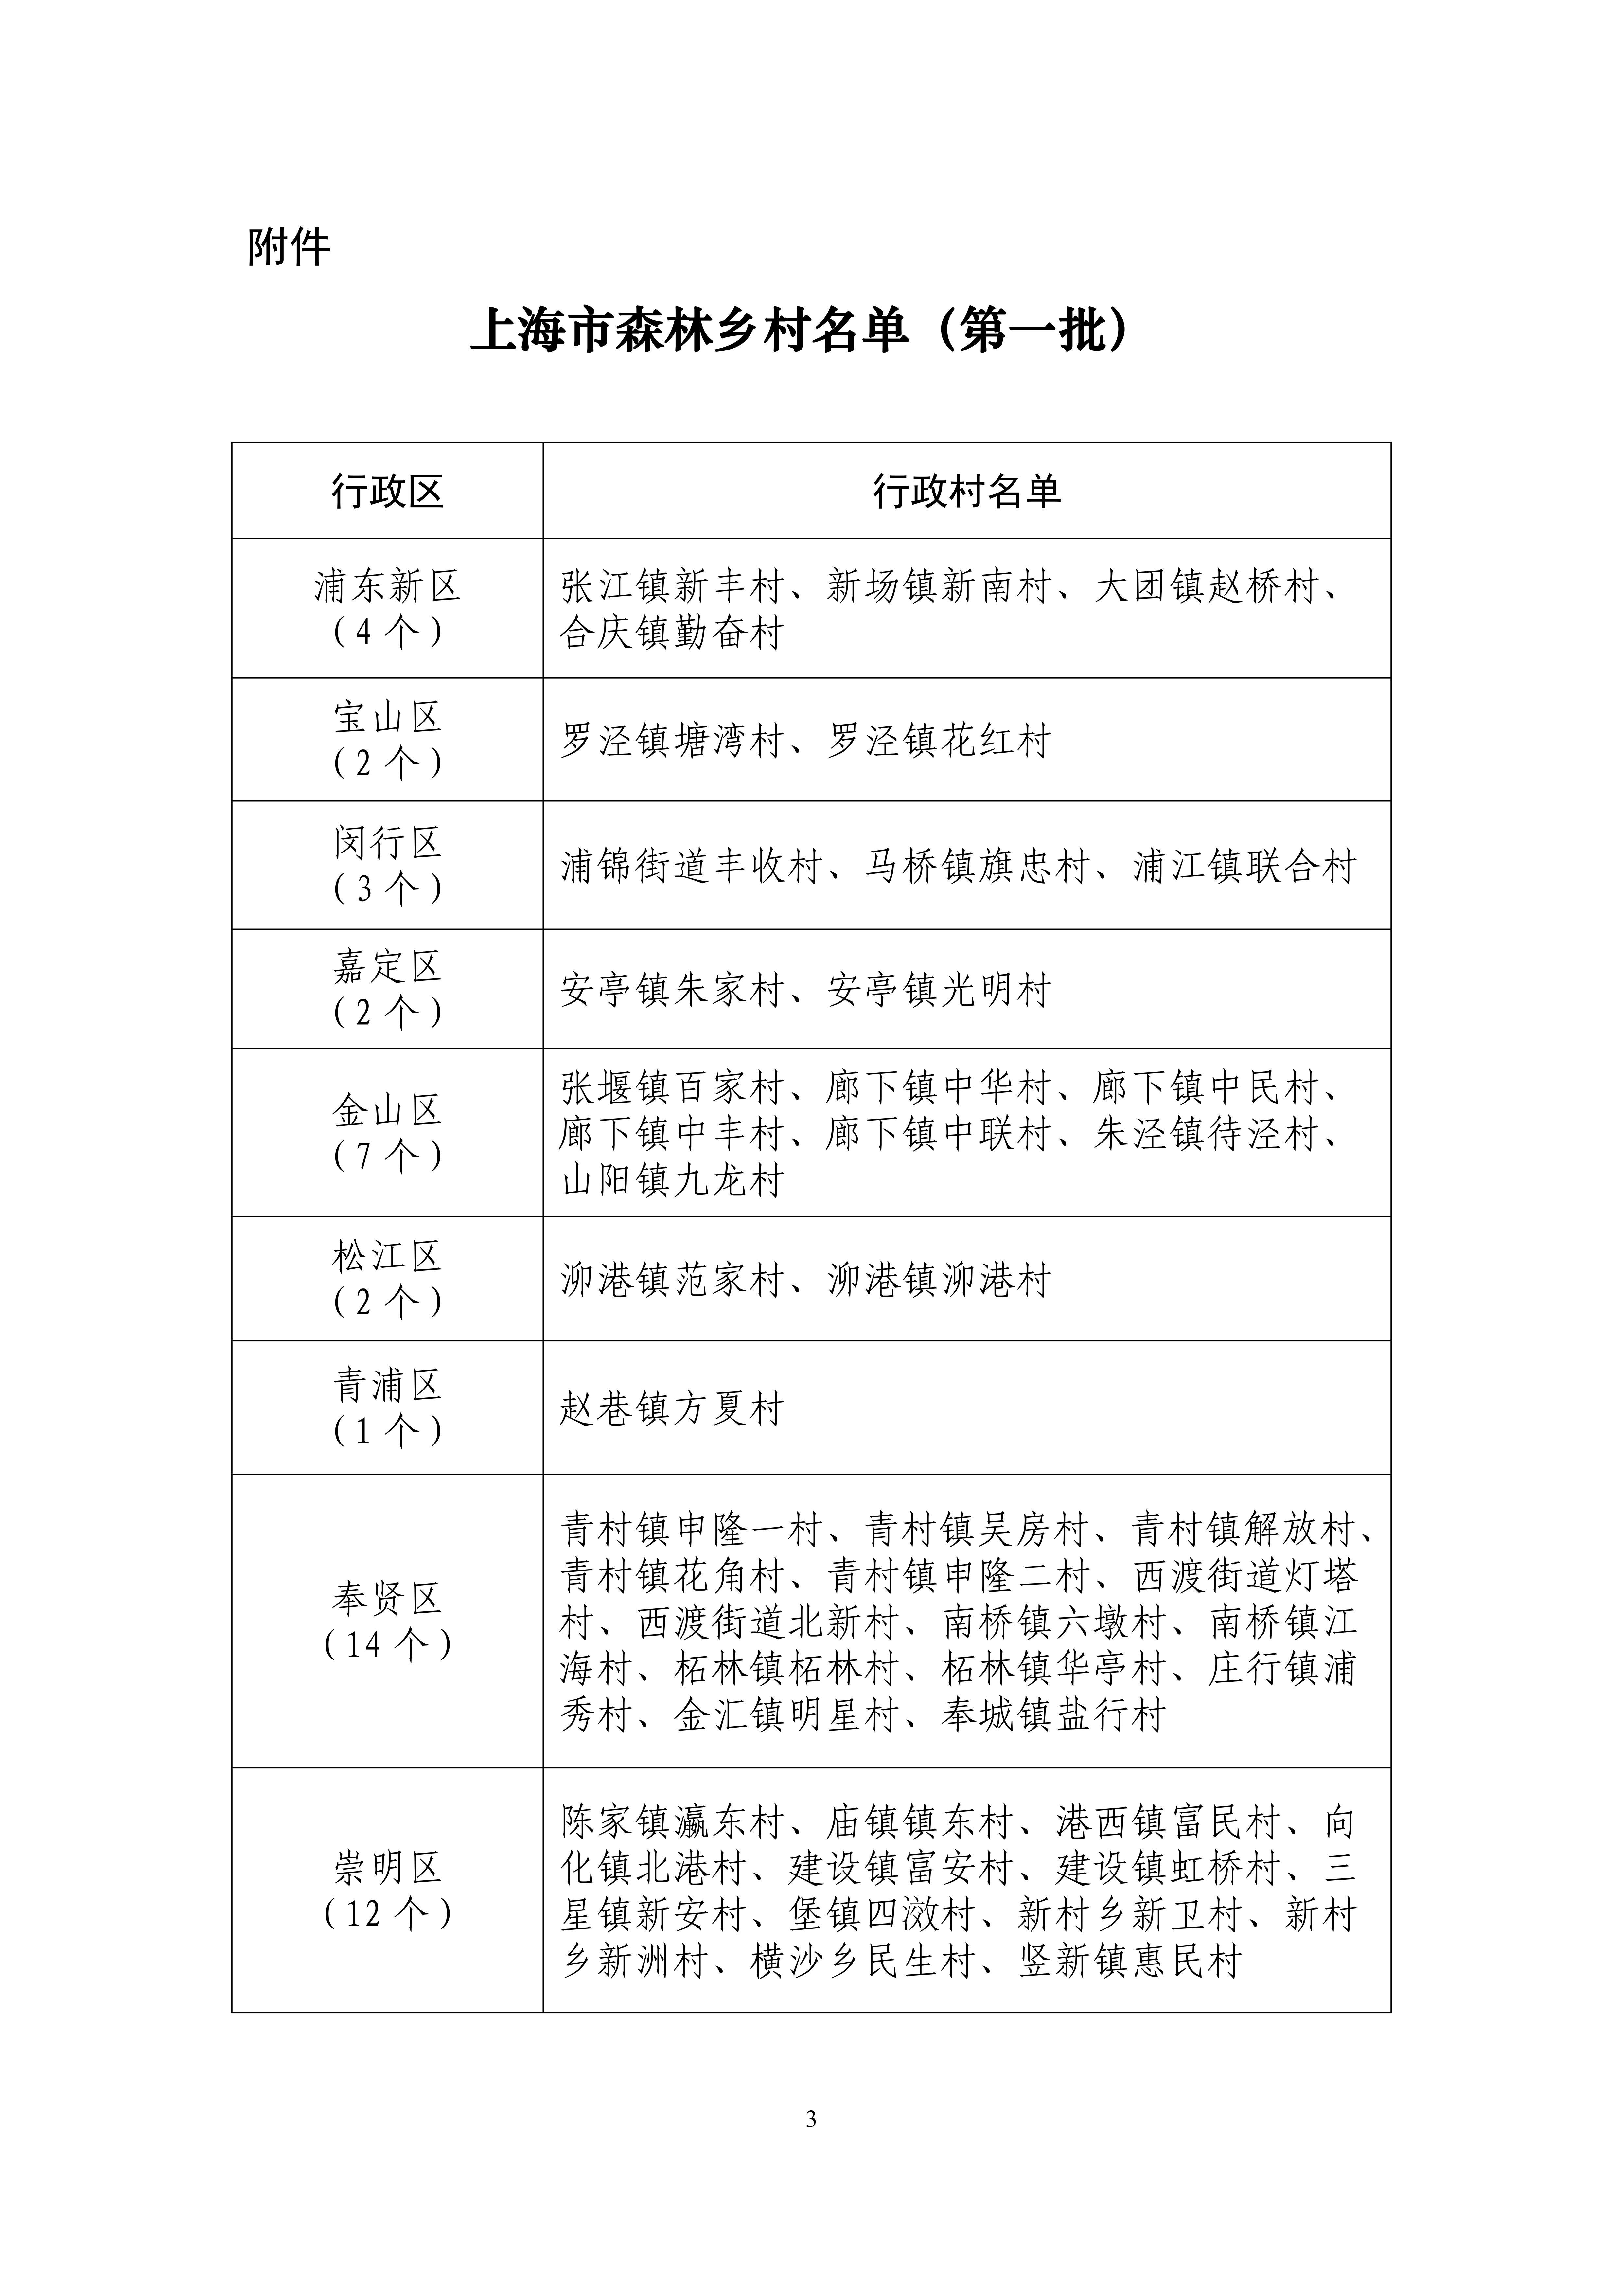 上海市公布首批47个市级森林乡村名单.jpg